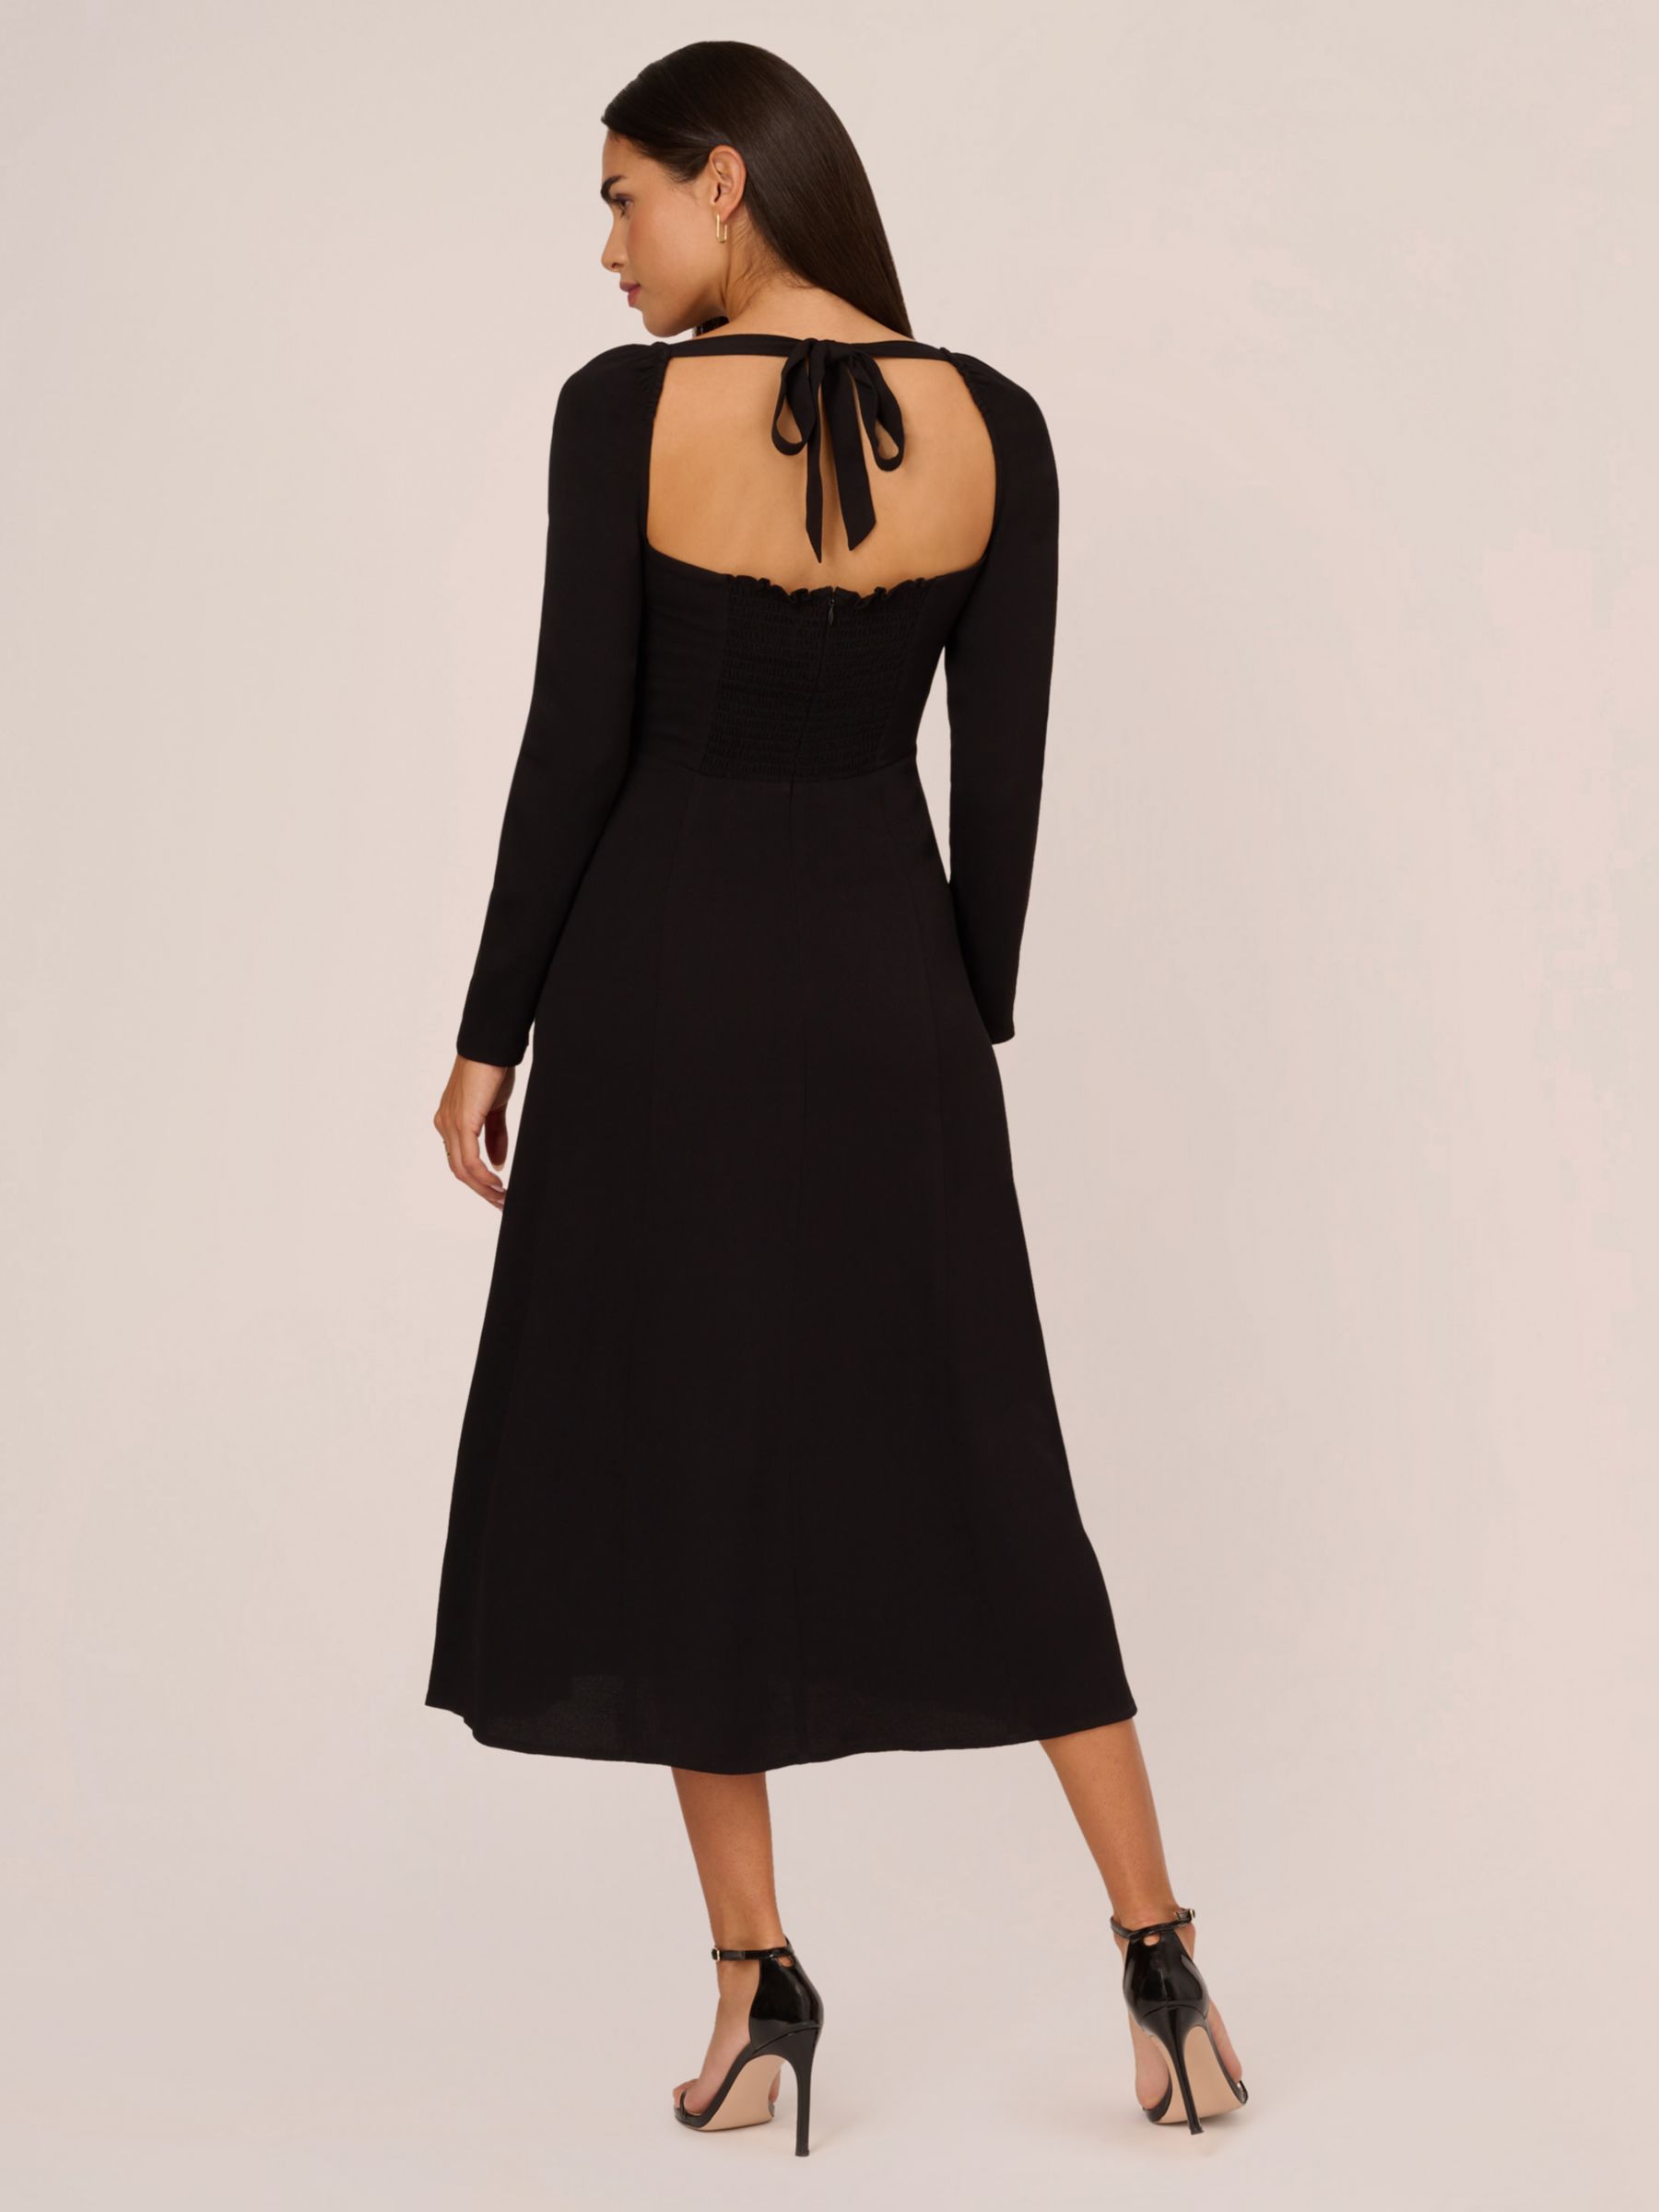 Adrianna Papell Light Crepe Midi Dress, Black, 12